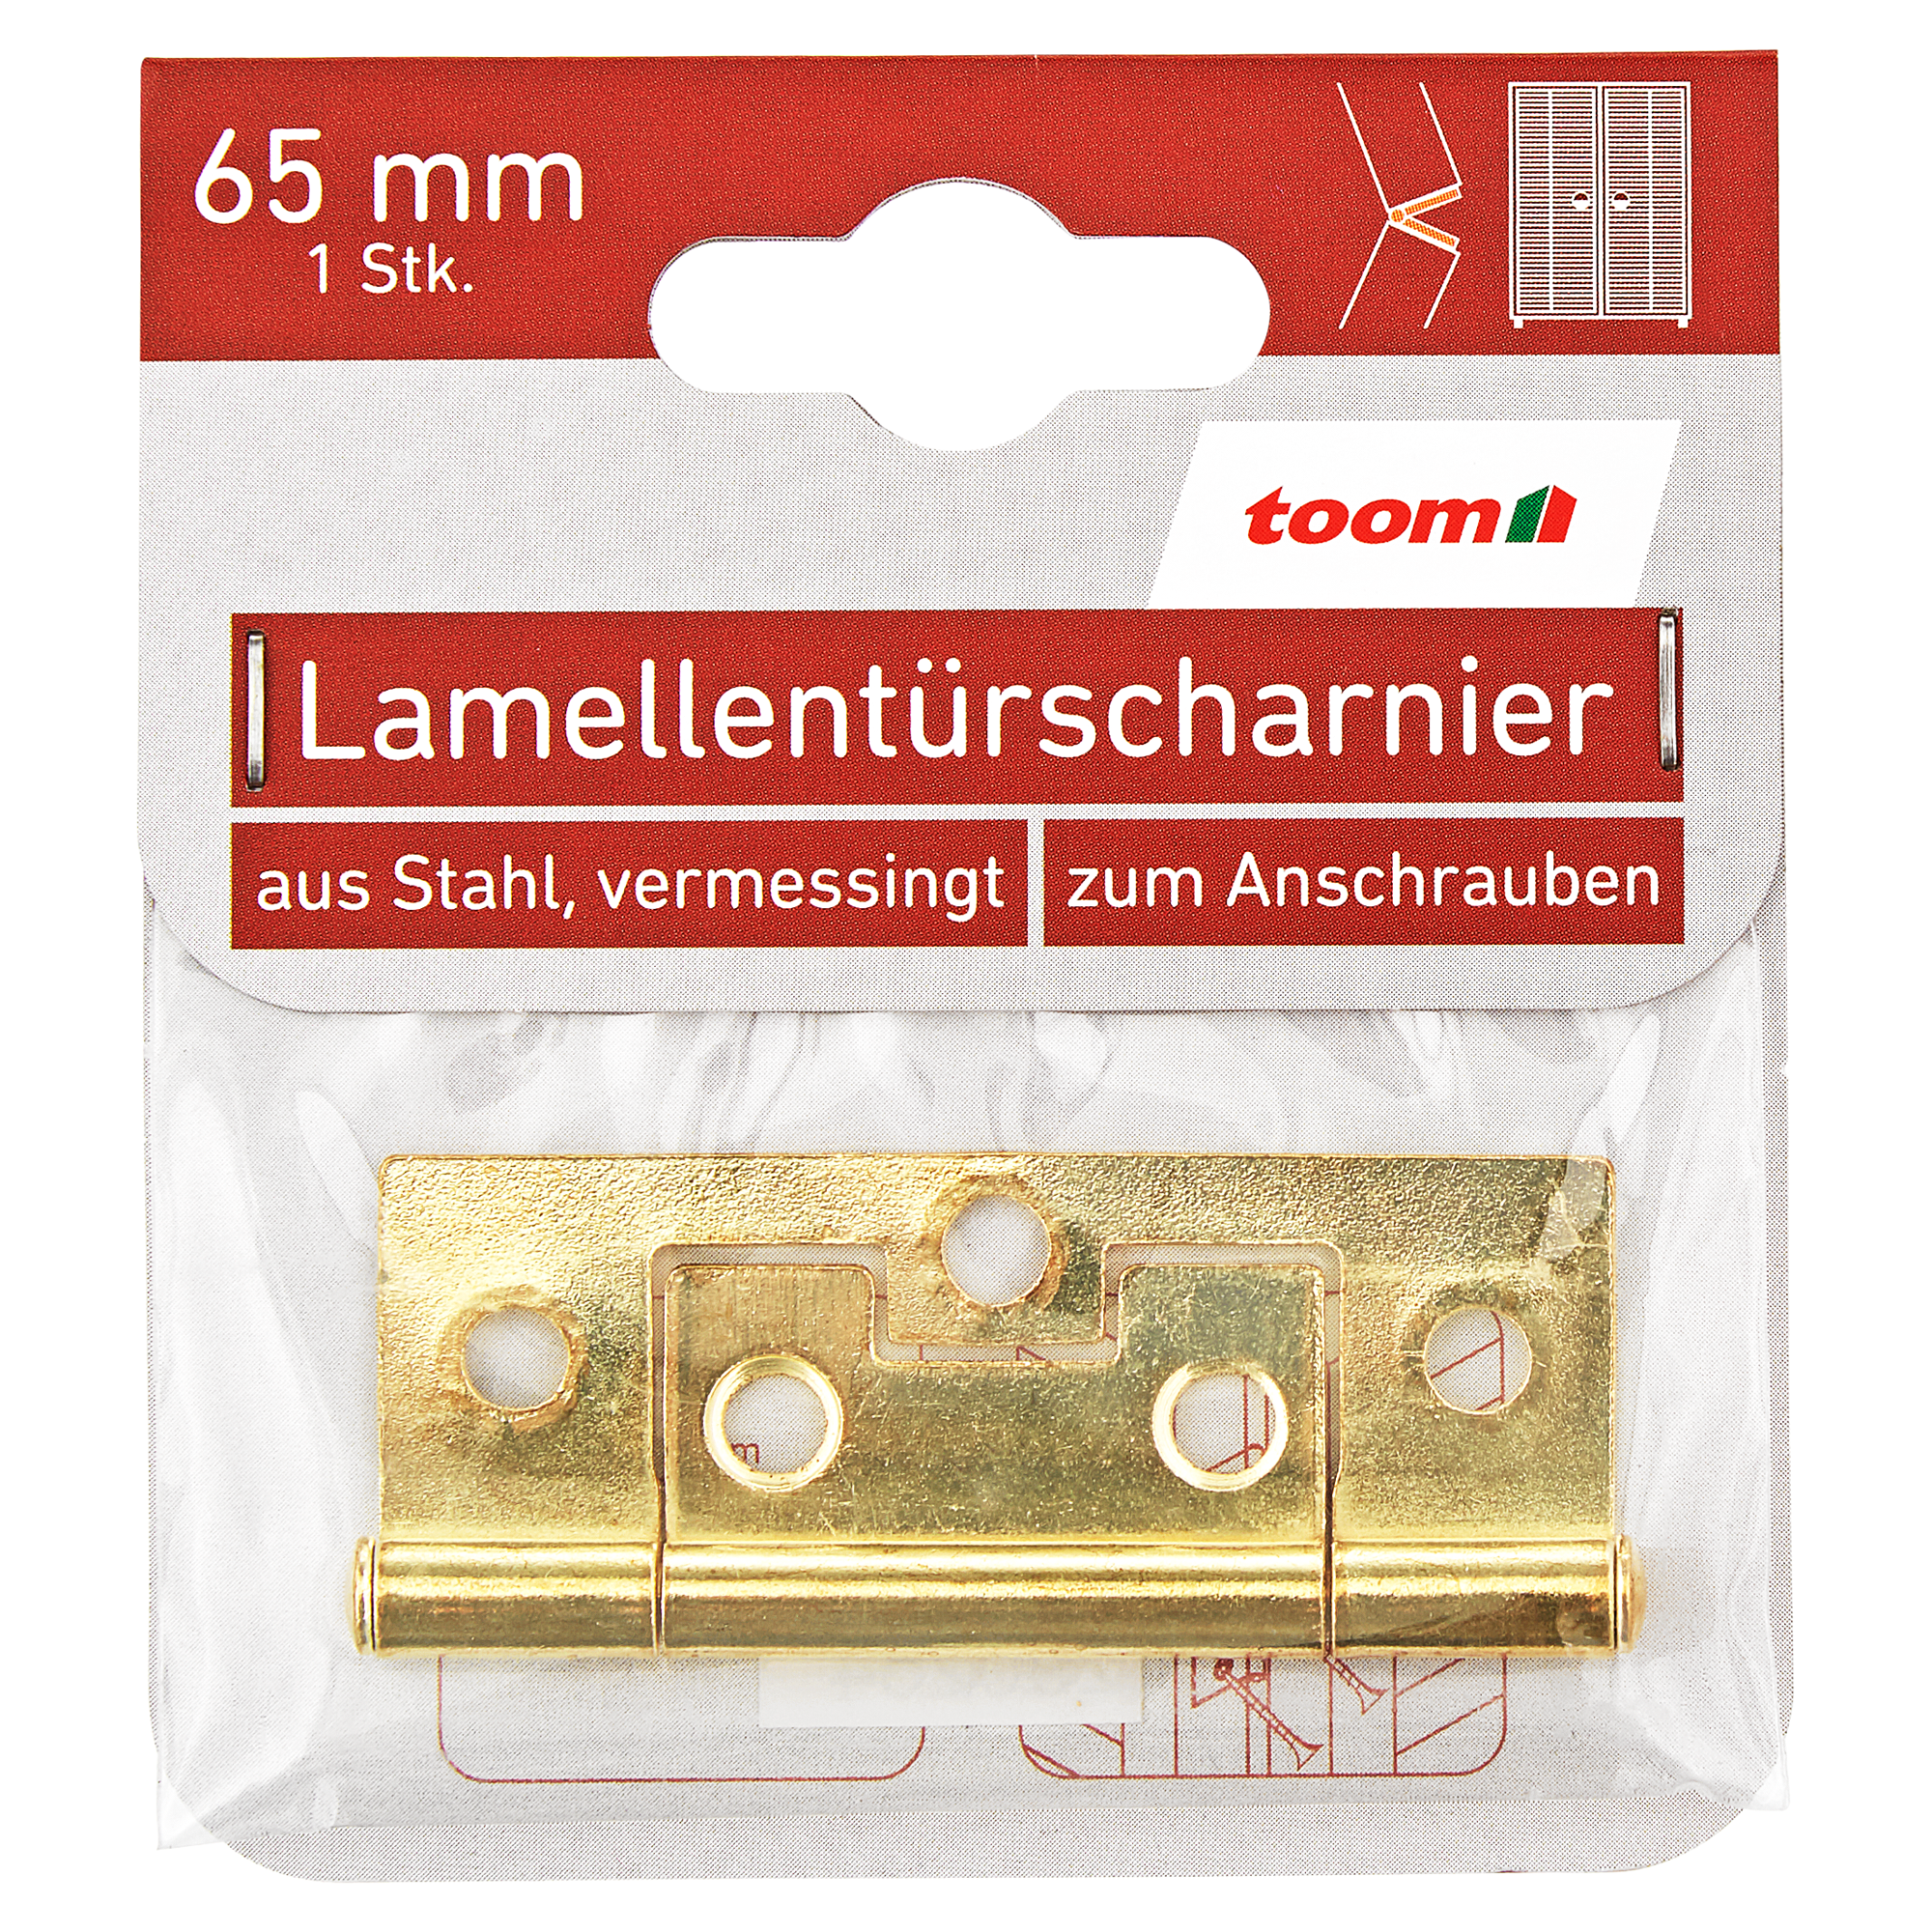 Lamellentürscharnier Stahl vermessingt 6,5 cm + product picture